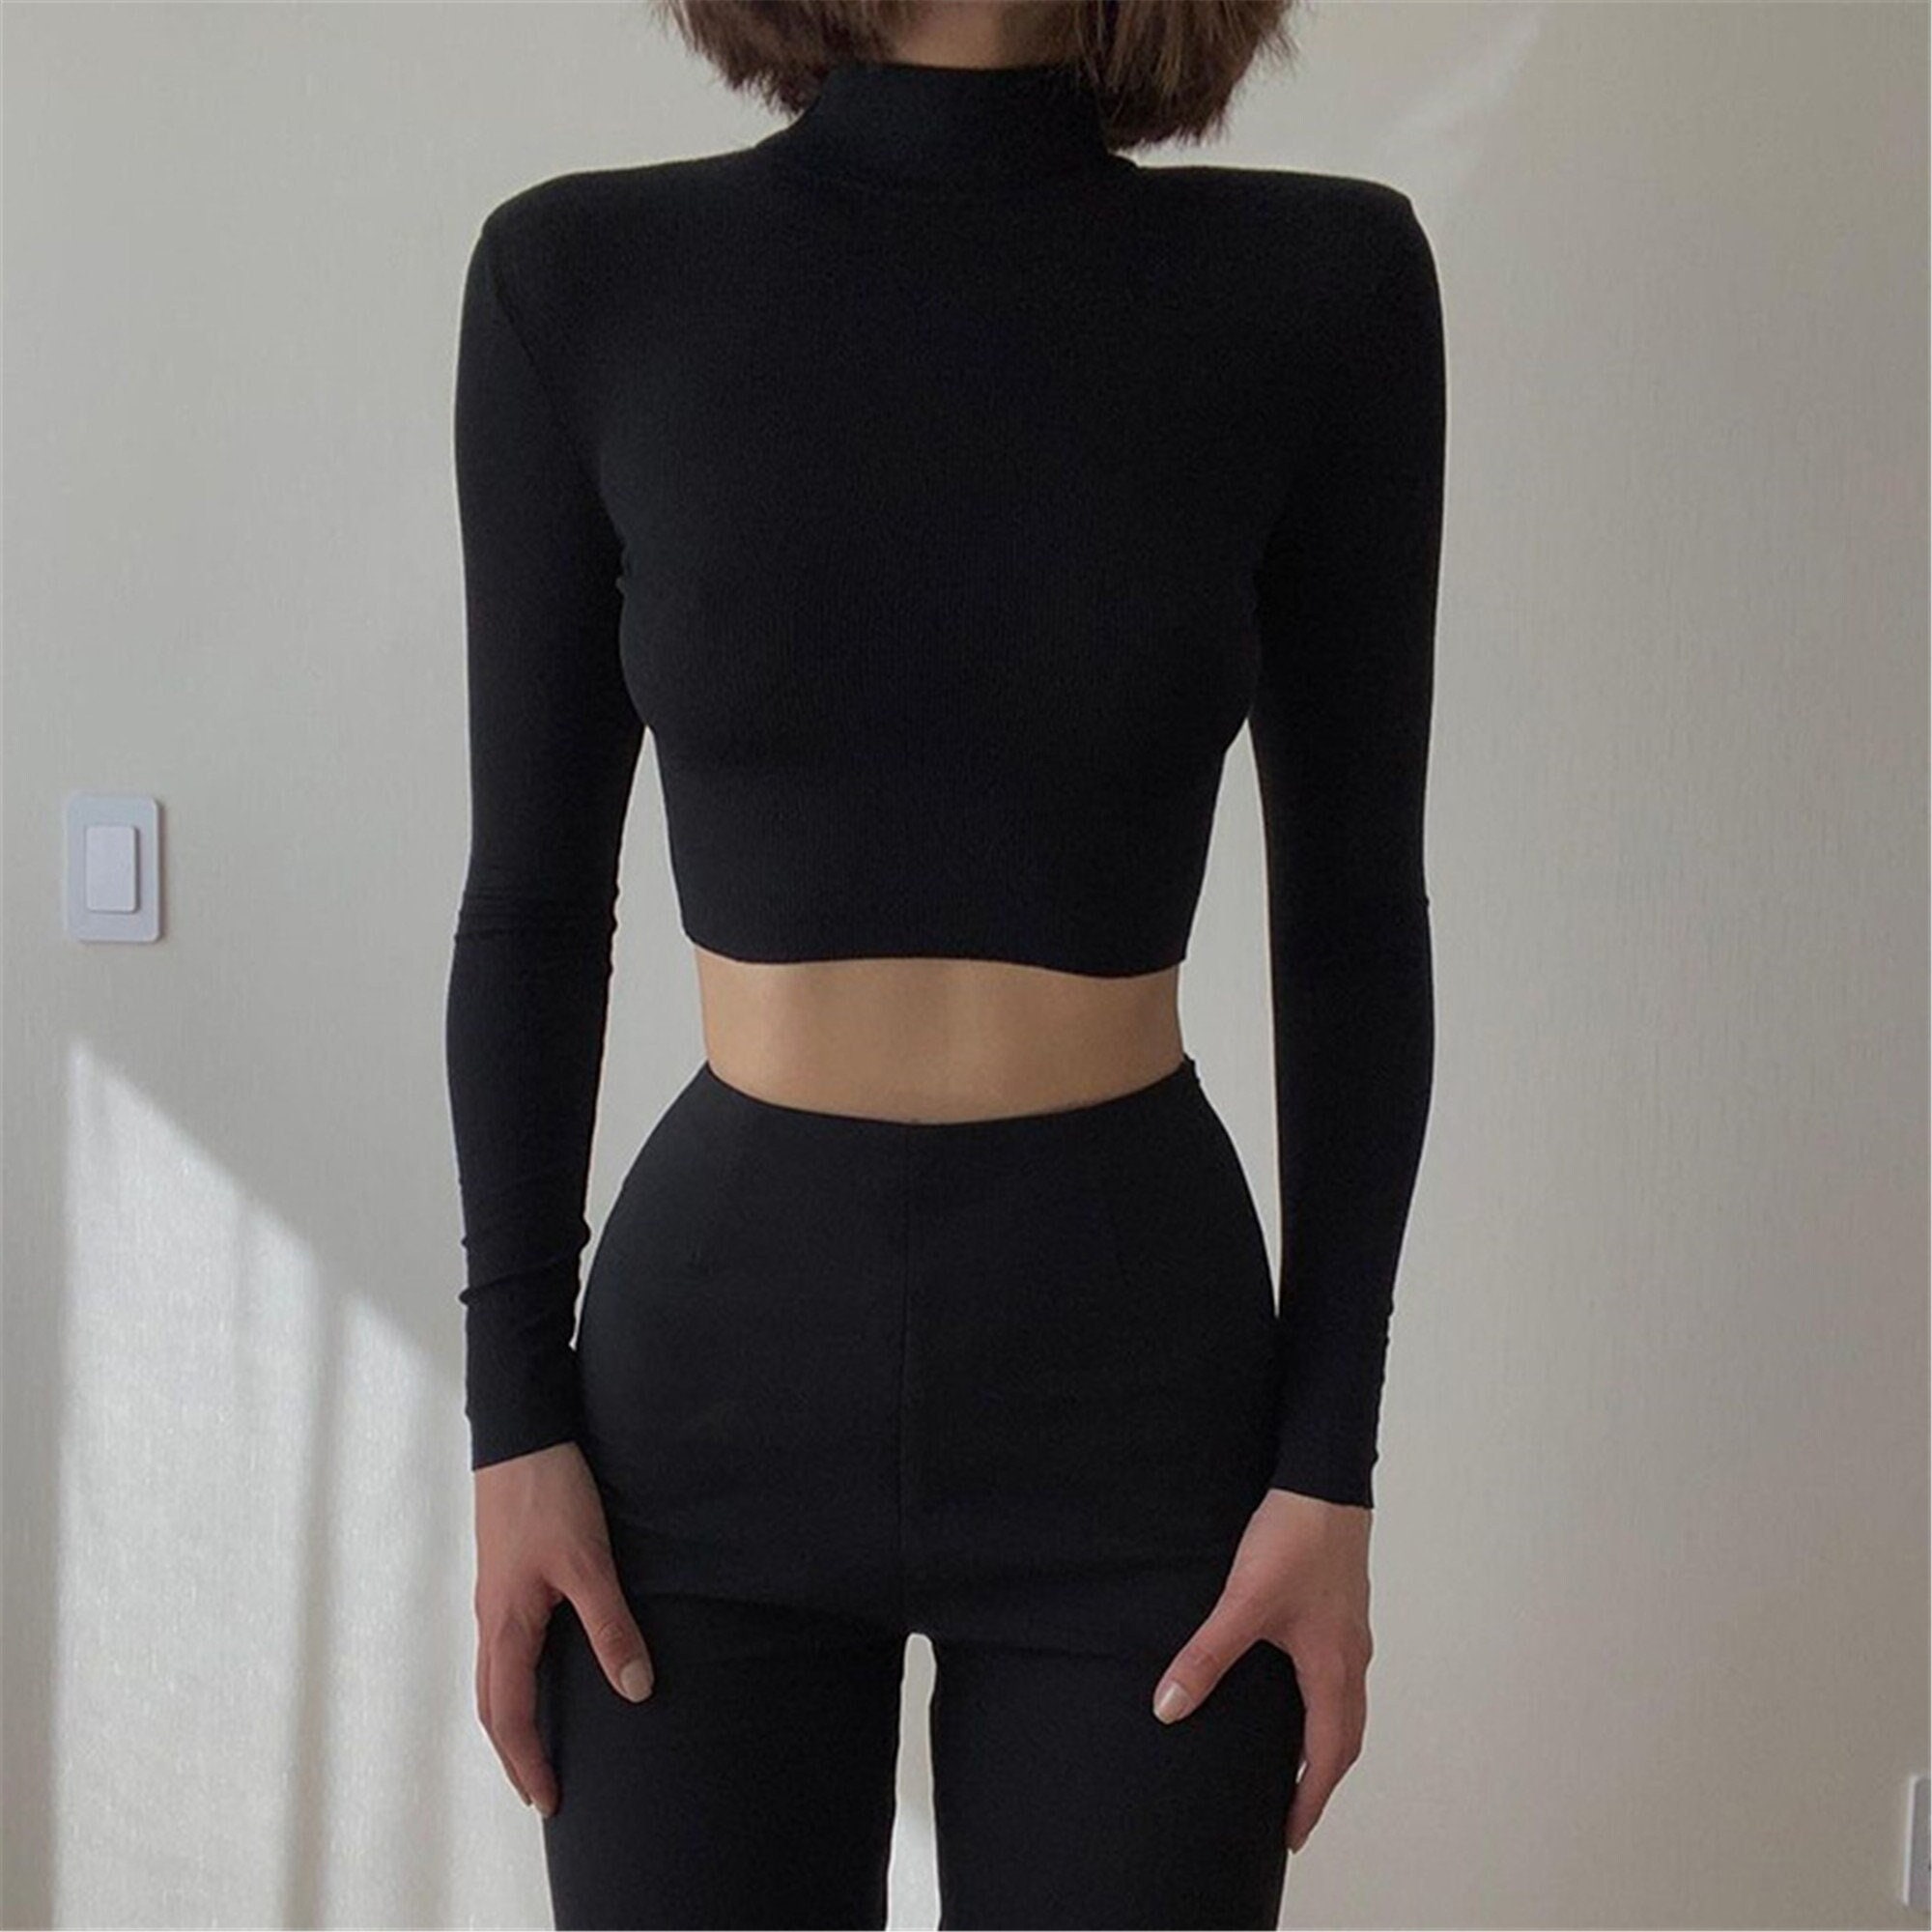 Long Sleeve Turtleneck Cropped Slim T Shirt Basic Crop Top Woman Clothing Crop Top Y2k Streetwear Aesthetic Clothing